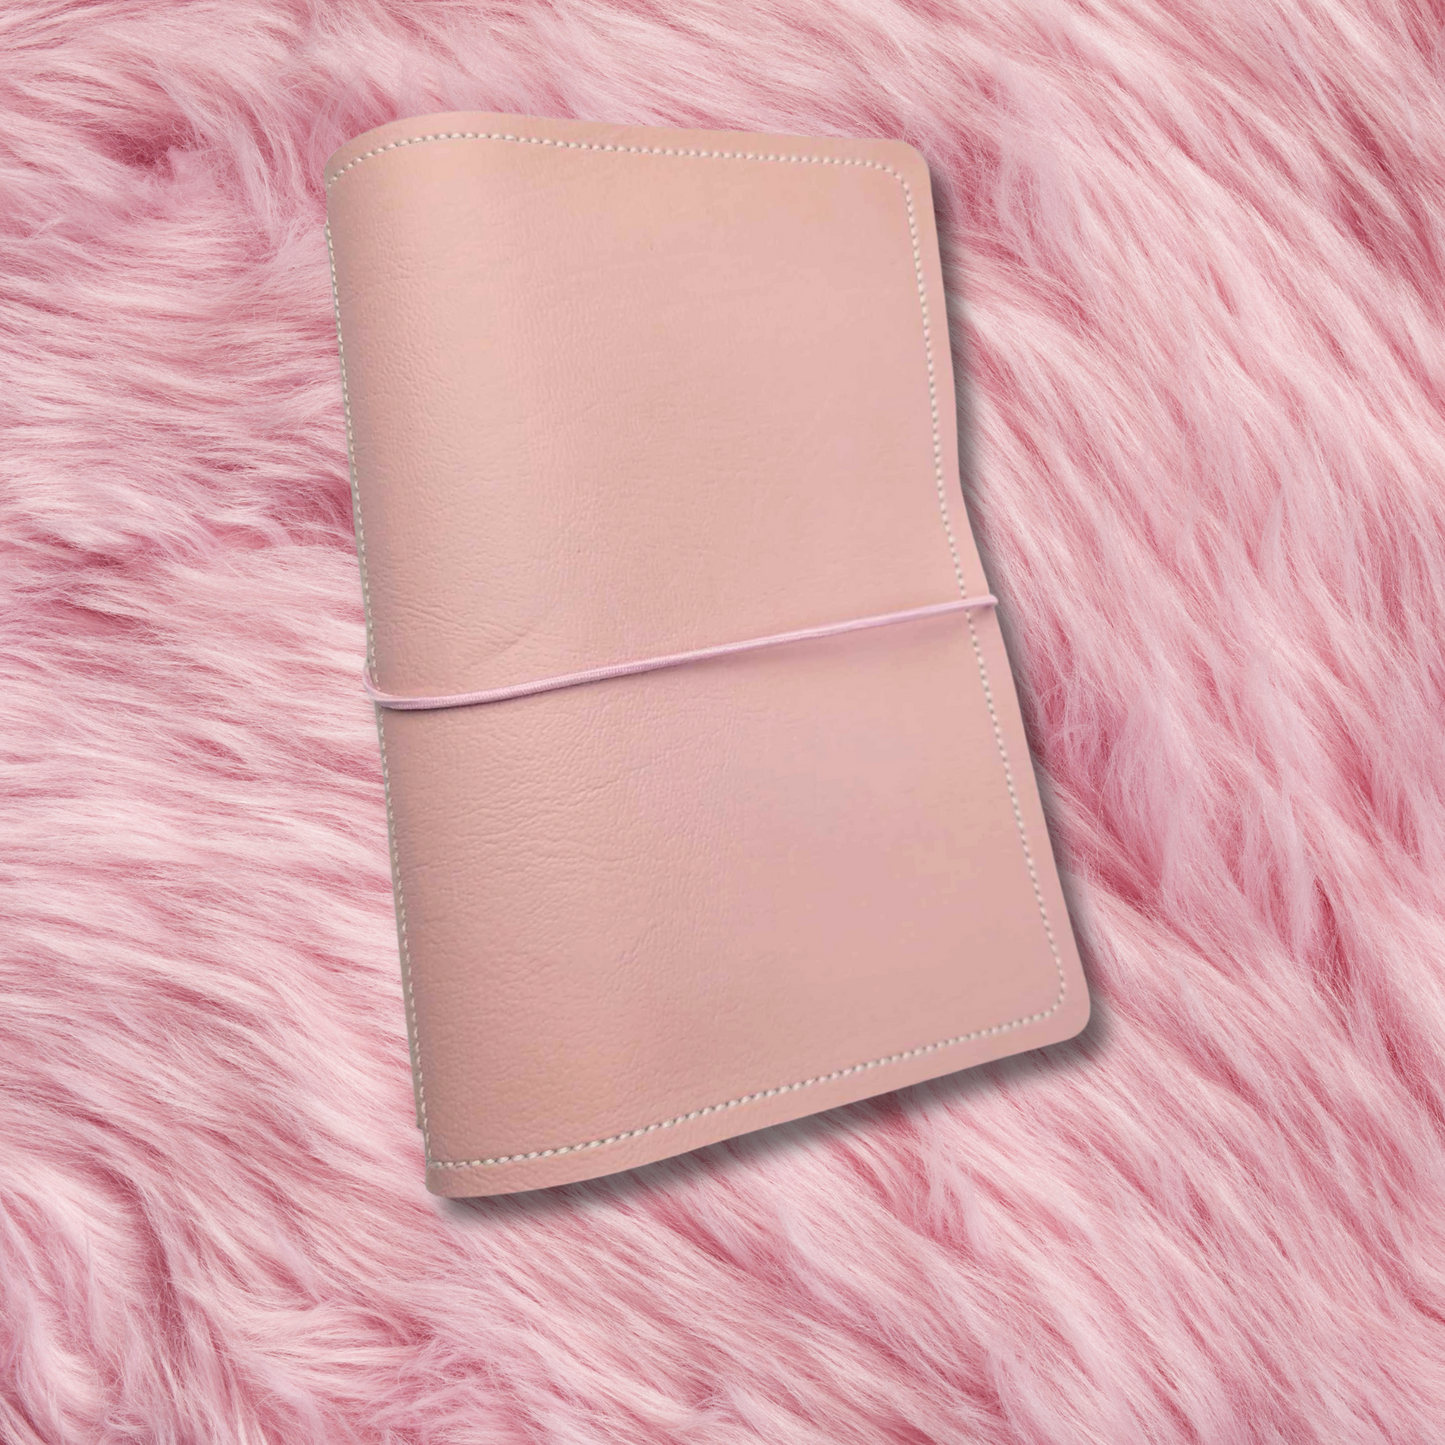 A6 Sized Handmade Traveler's Notebook - Powder Pink